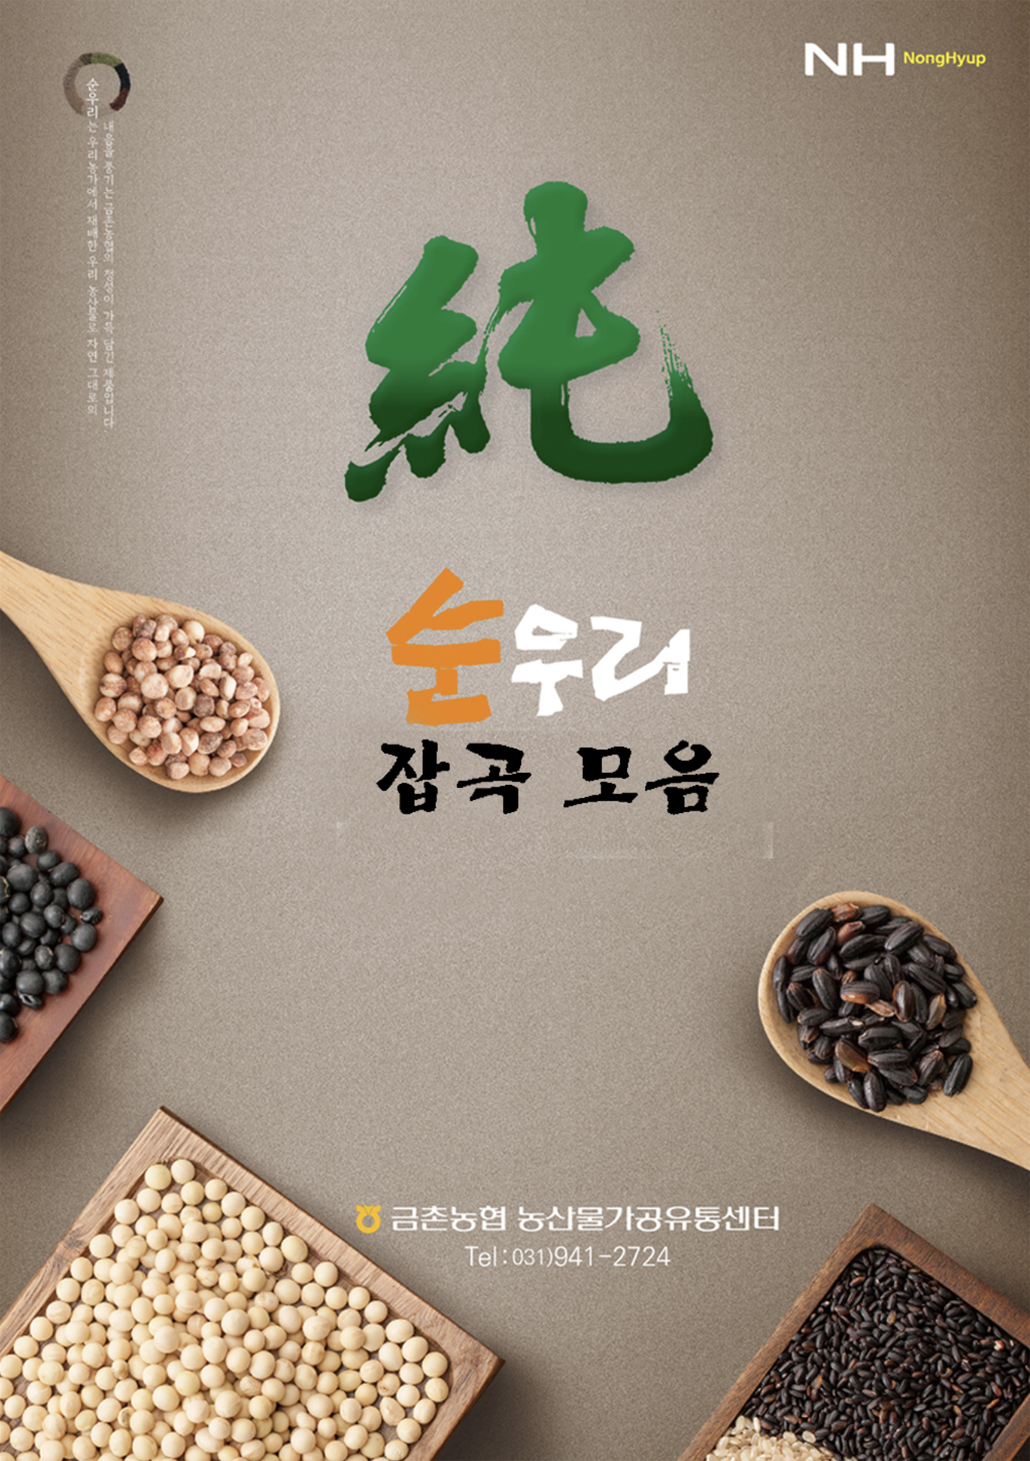 韓國食品-[GeumCheonNH] Soonwoori Black Rice 1kg